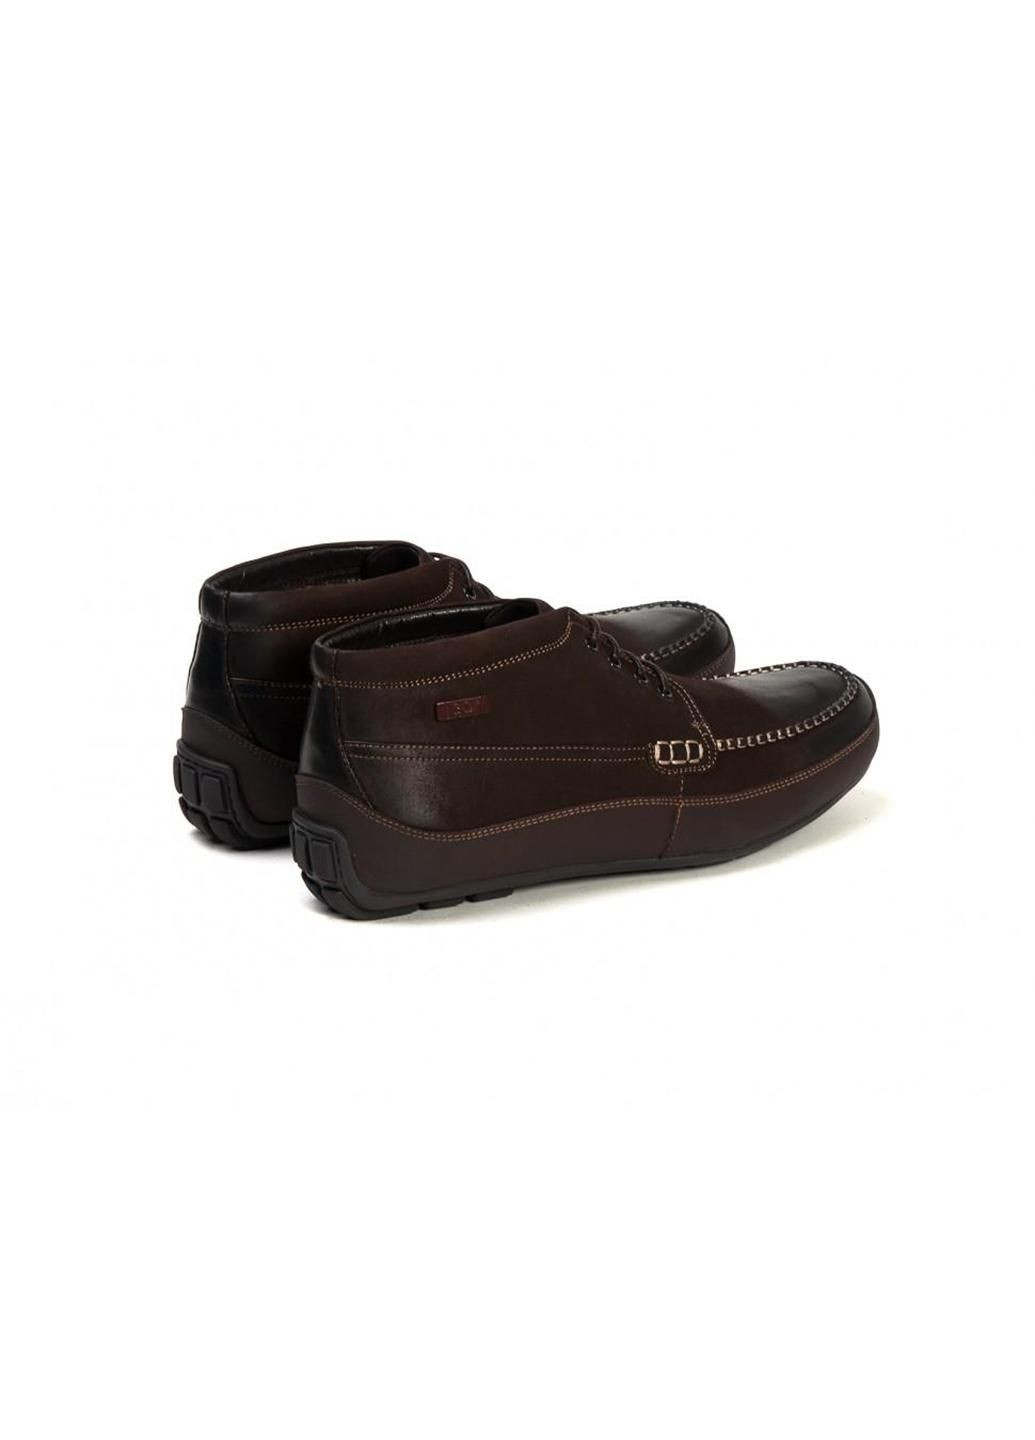 Коричневые ботинки 7134837 45 цвет коричневый Battisto Lascari